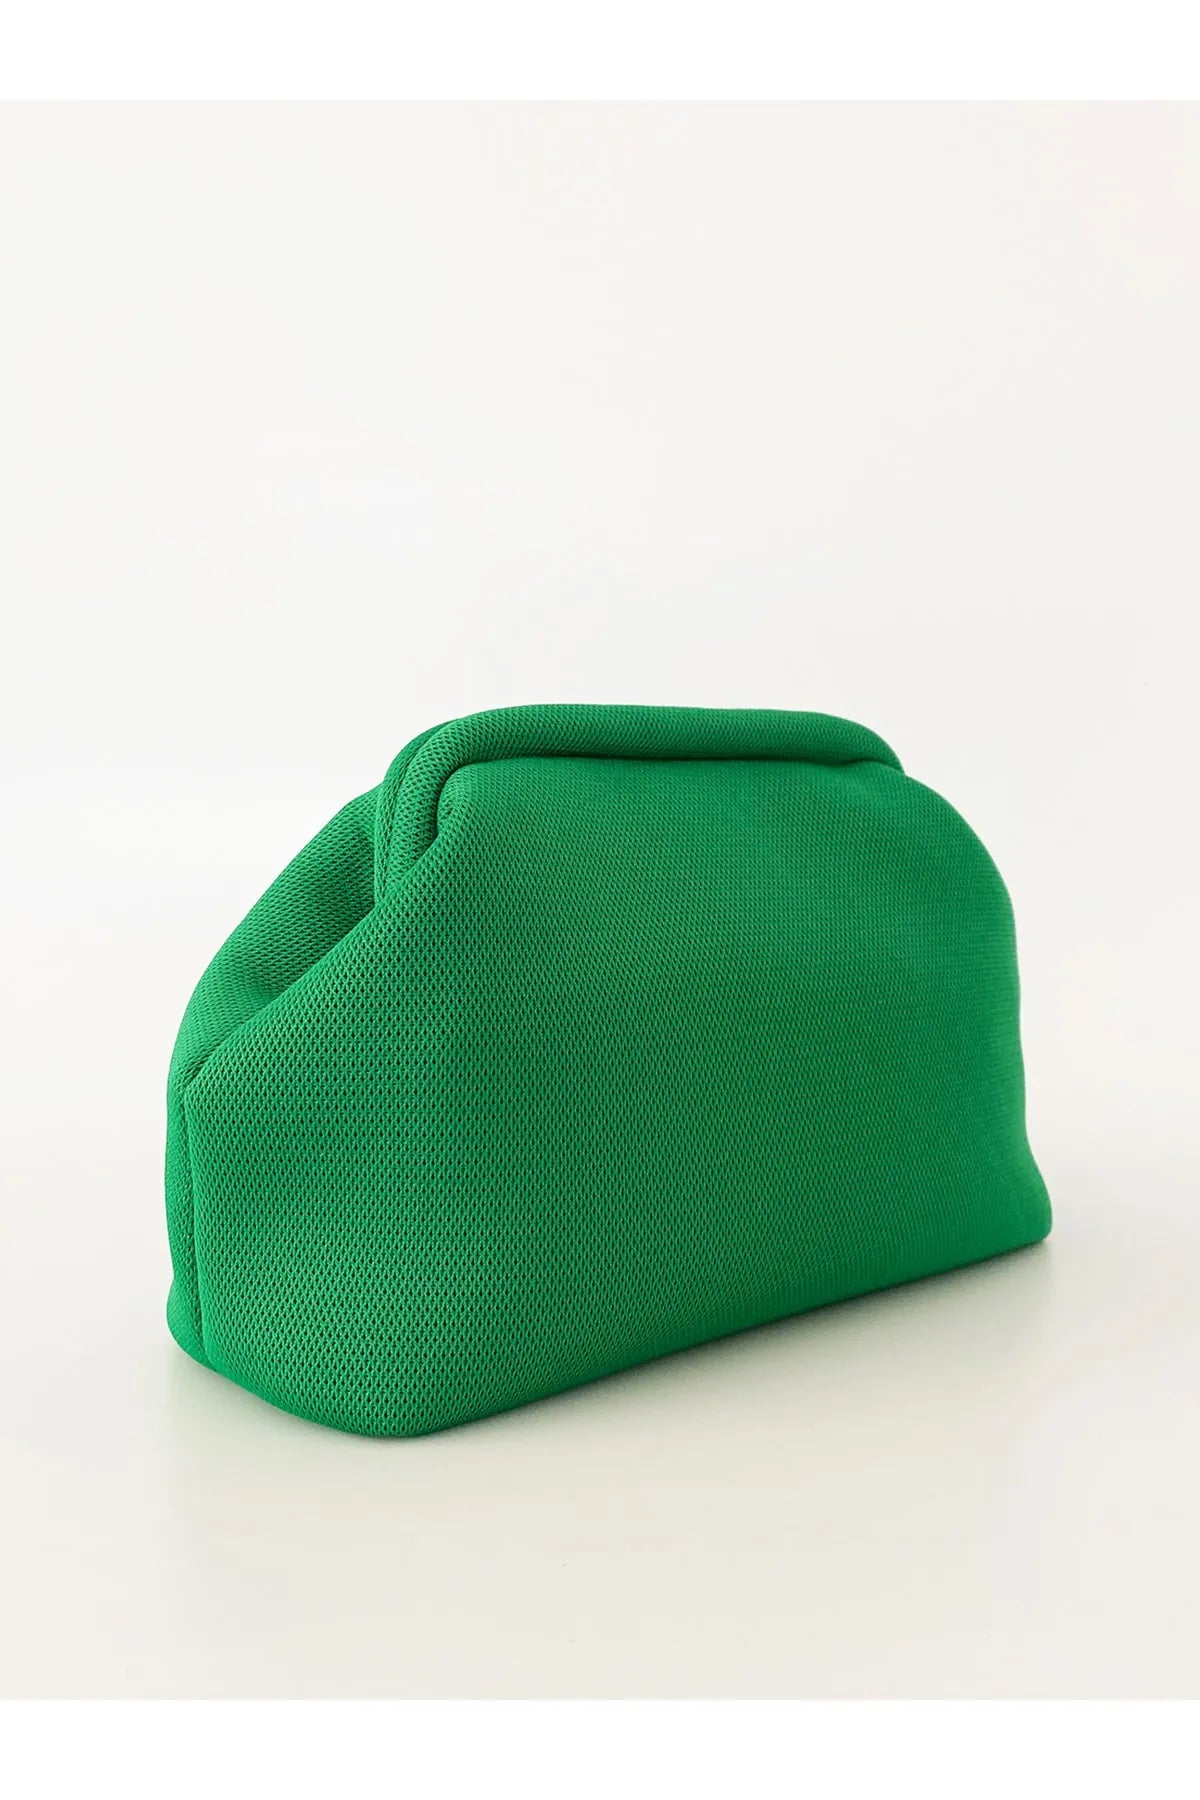 Green Clutch Handbag clutch LUNARITY GARAGE   